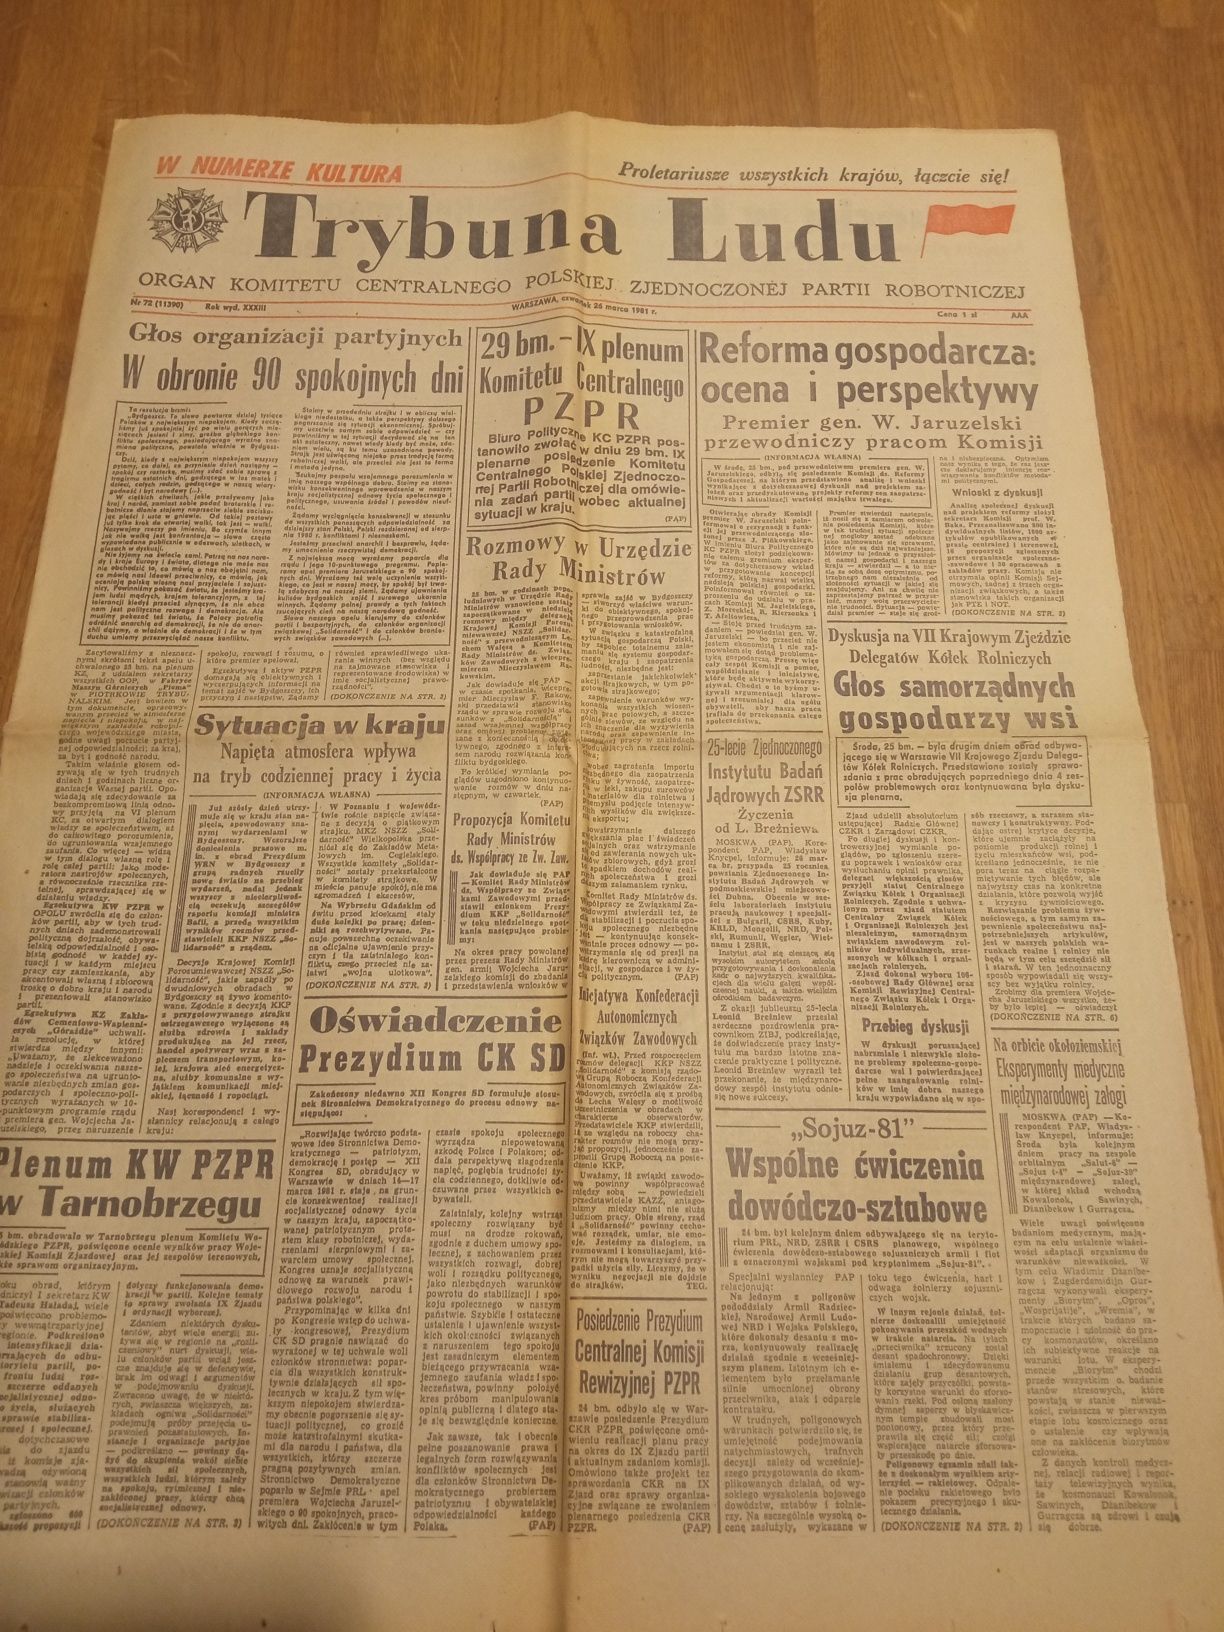 Trybuna Ludu z 31.03.1981